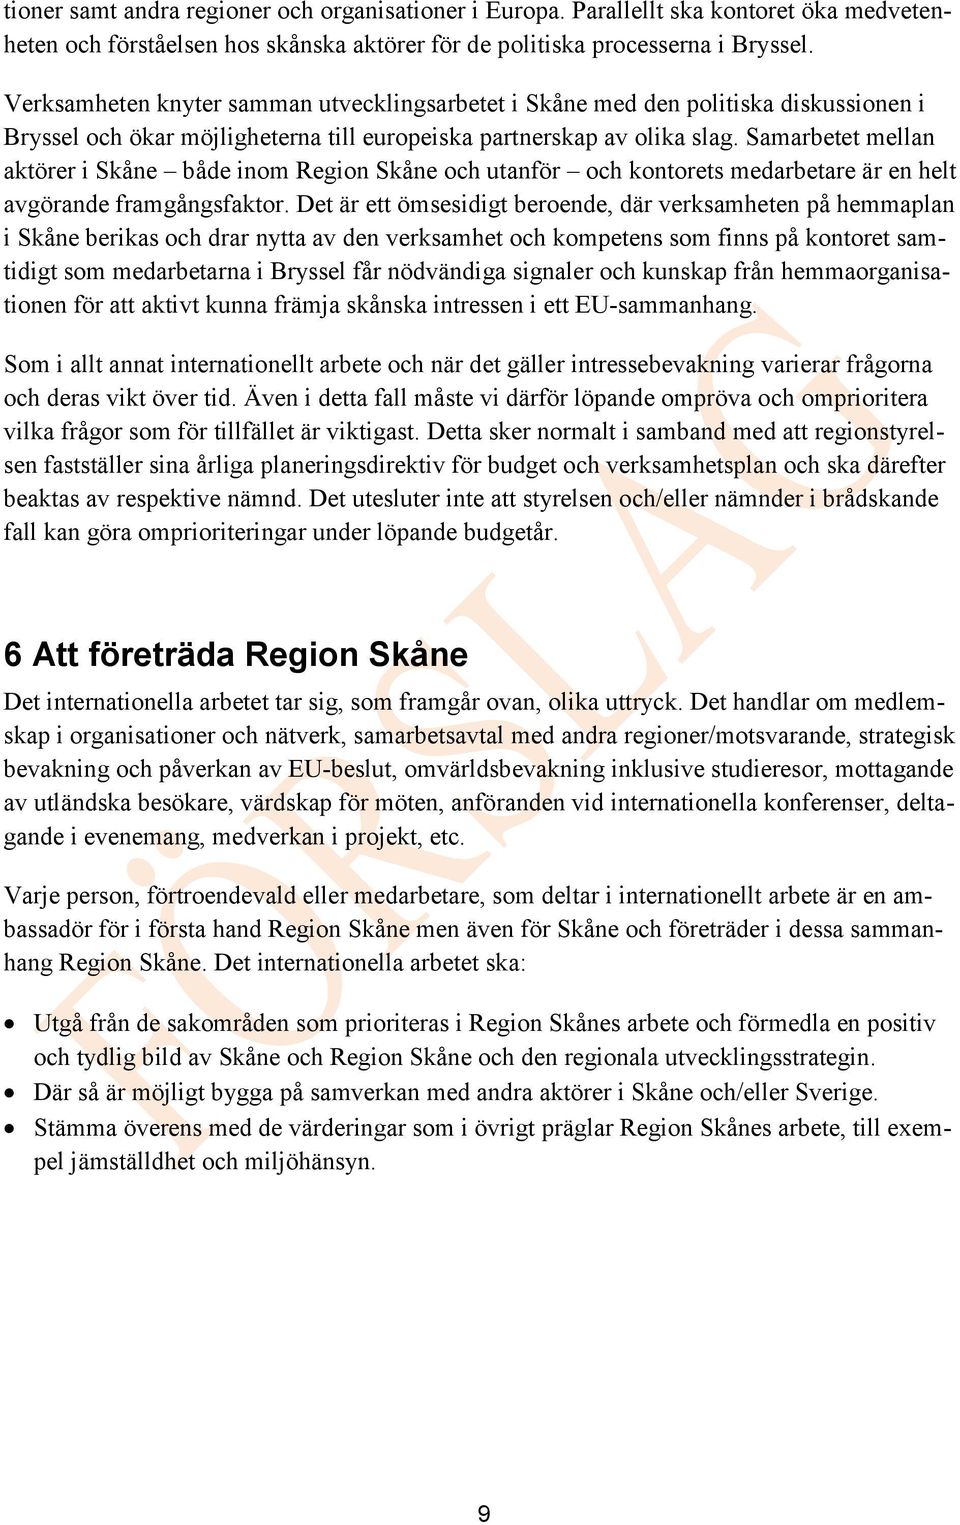 Samarbetet mellan aktörer i Skåne både inom Region Skåne och utanför och kontorets medarbetare är en helt avgörande framgångsfaktor.